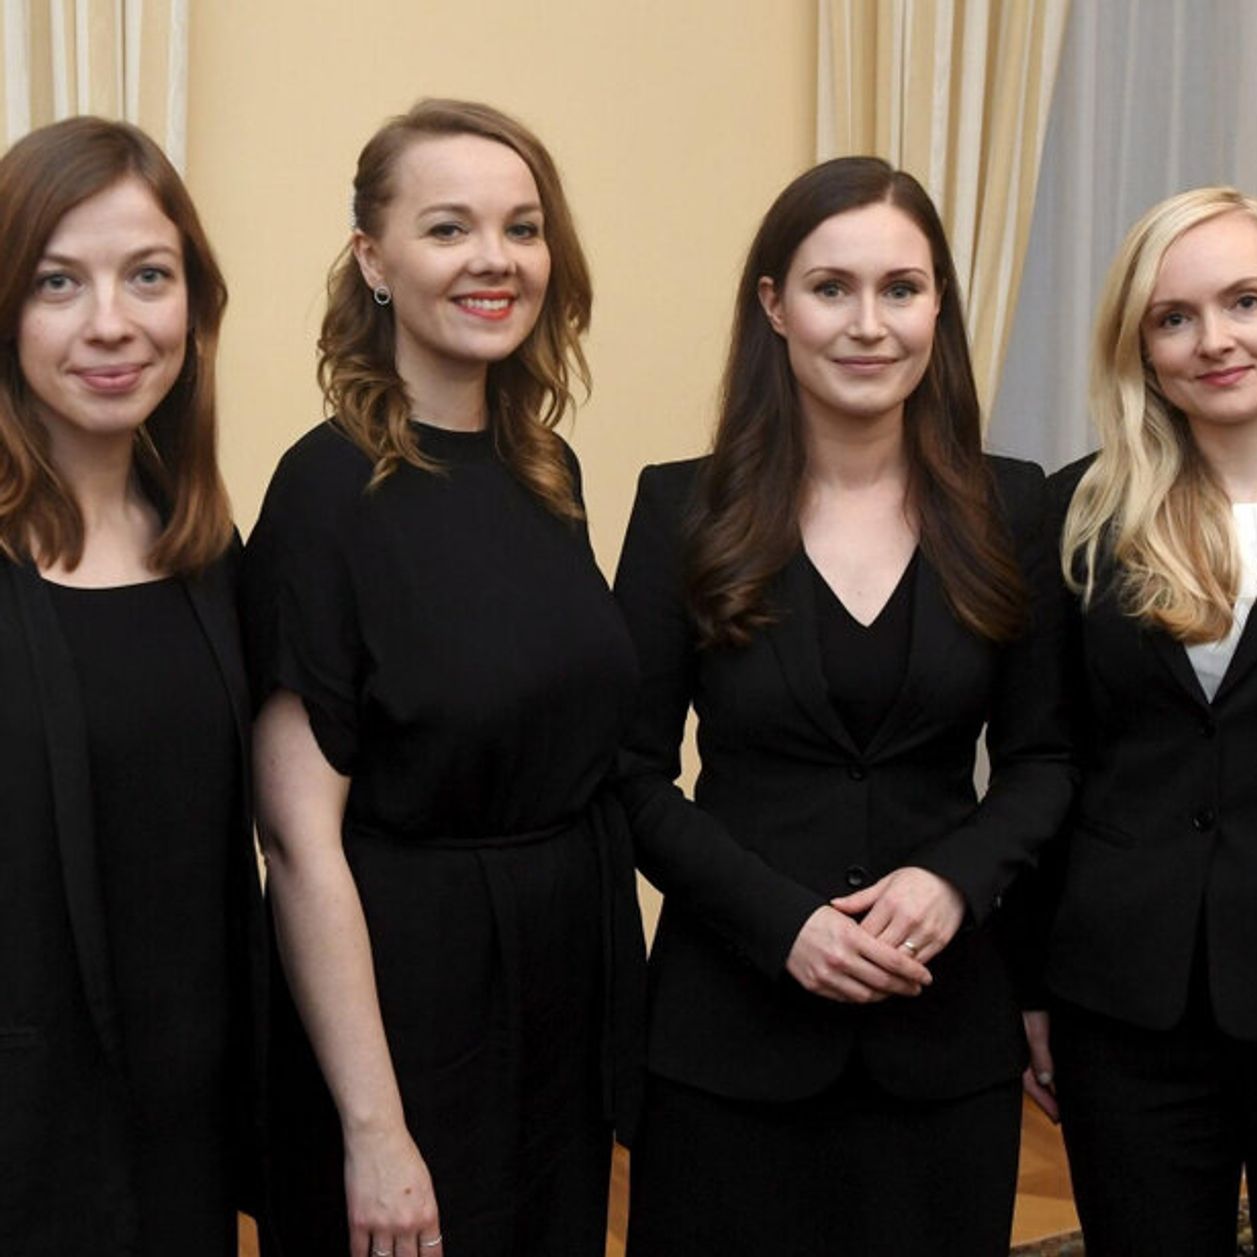 Il y a une majorité de femmes au pouvoir en Finlande, et si nous prenions exemple ?